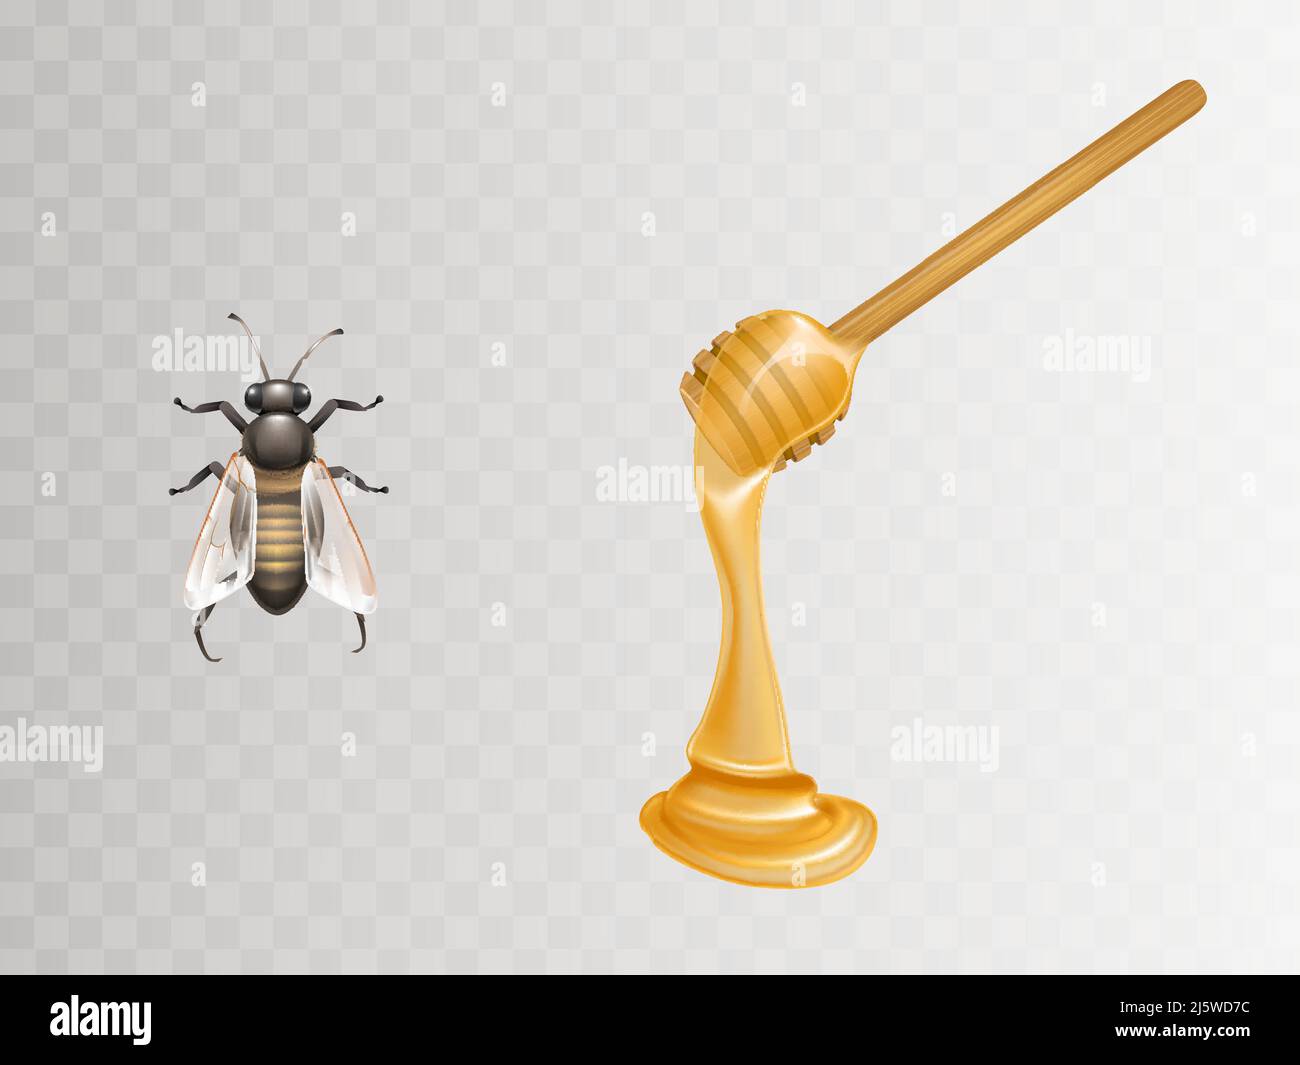 Miele fresco che scorre e gocciola da legno dipper e ape 3D realistiche illustrazioni vettoriali set isolato su sfondo trasparente. L'apicoltura indus Illustrazione Vettoriale